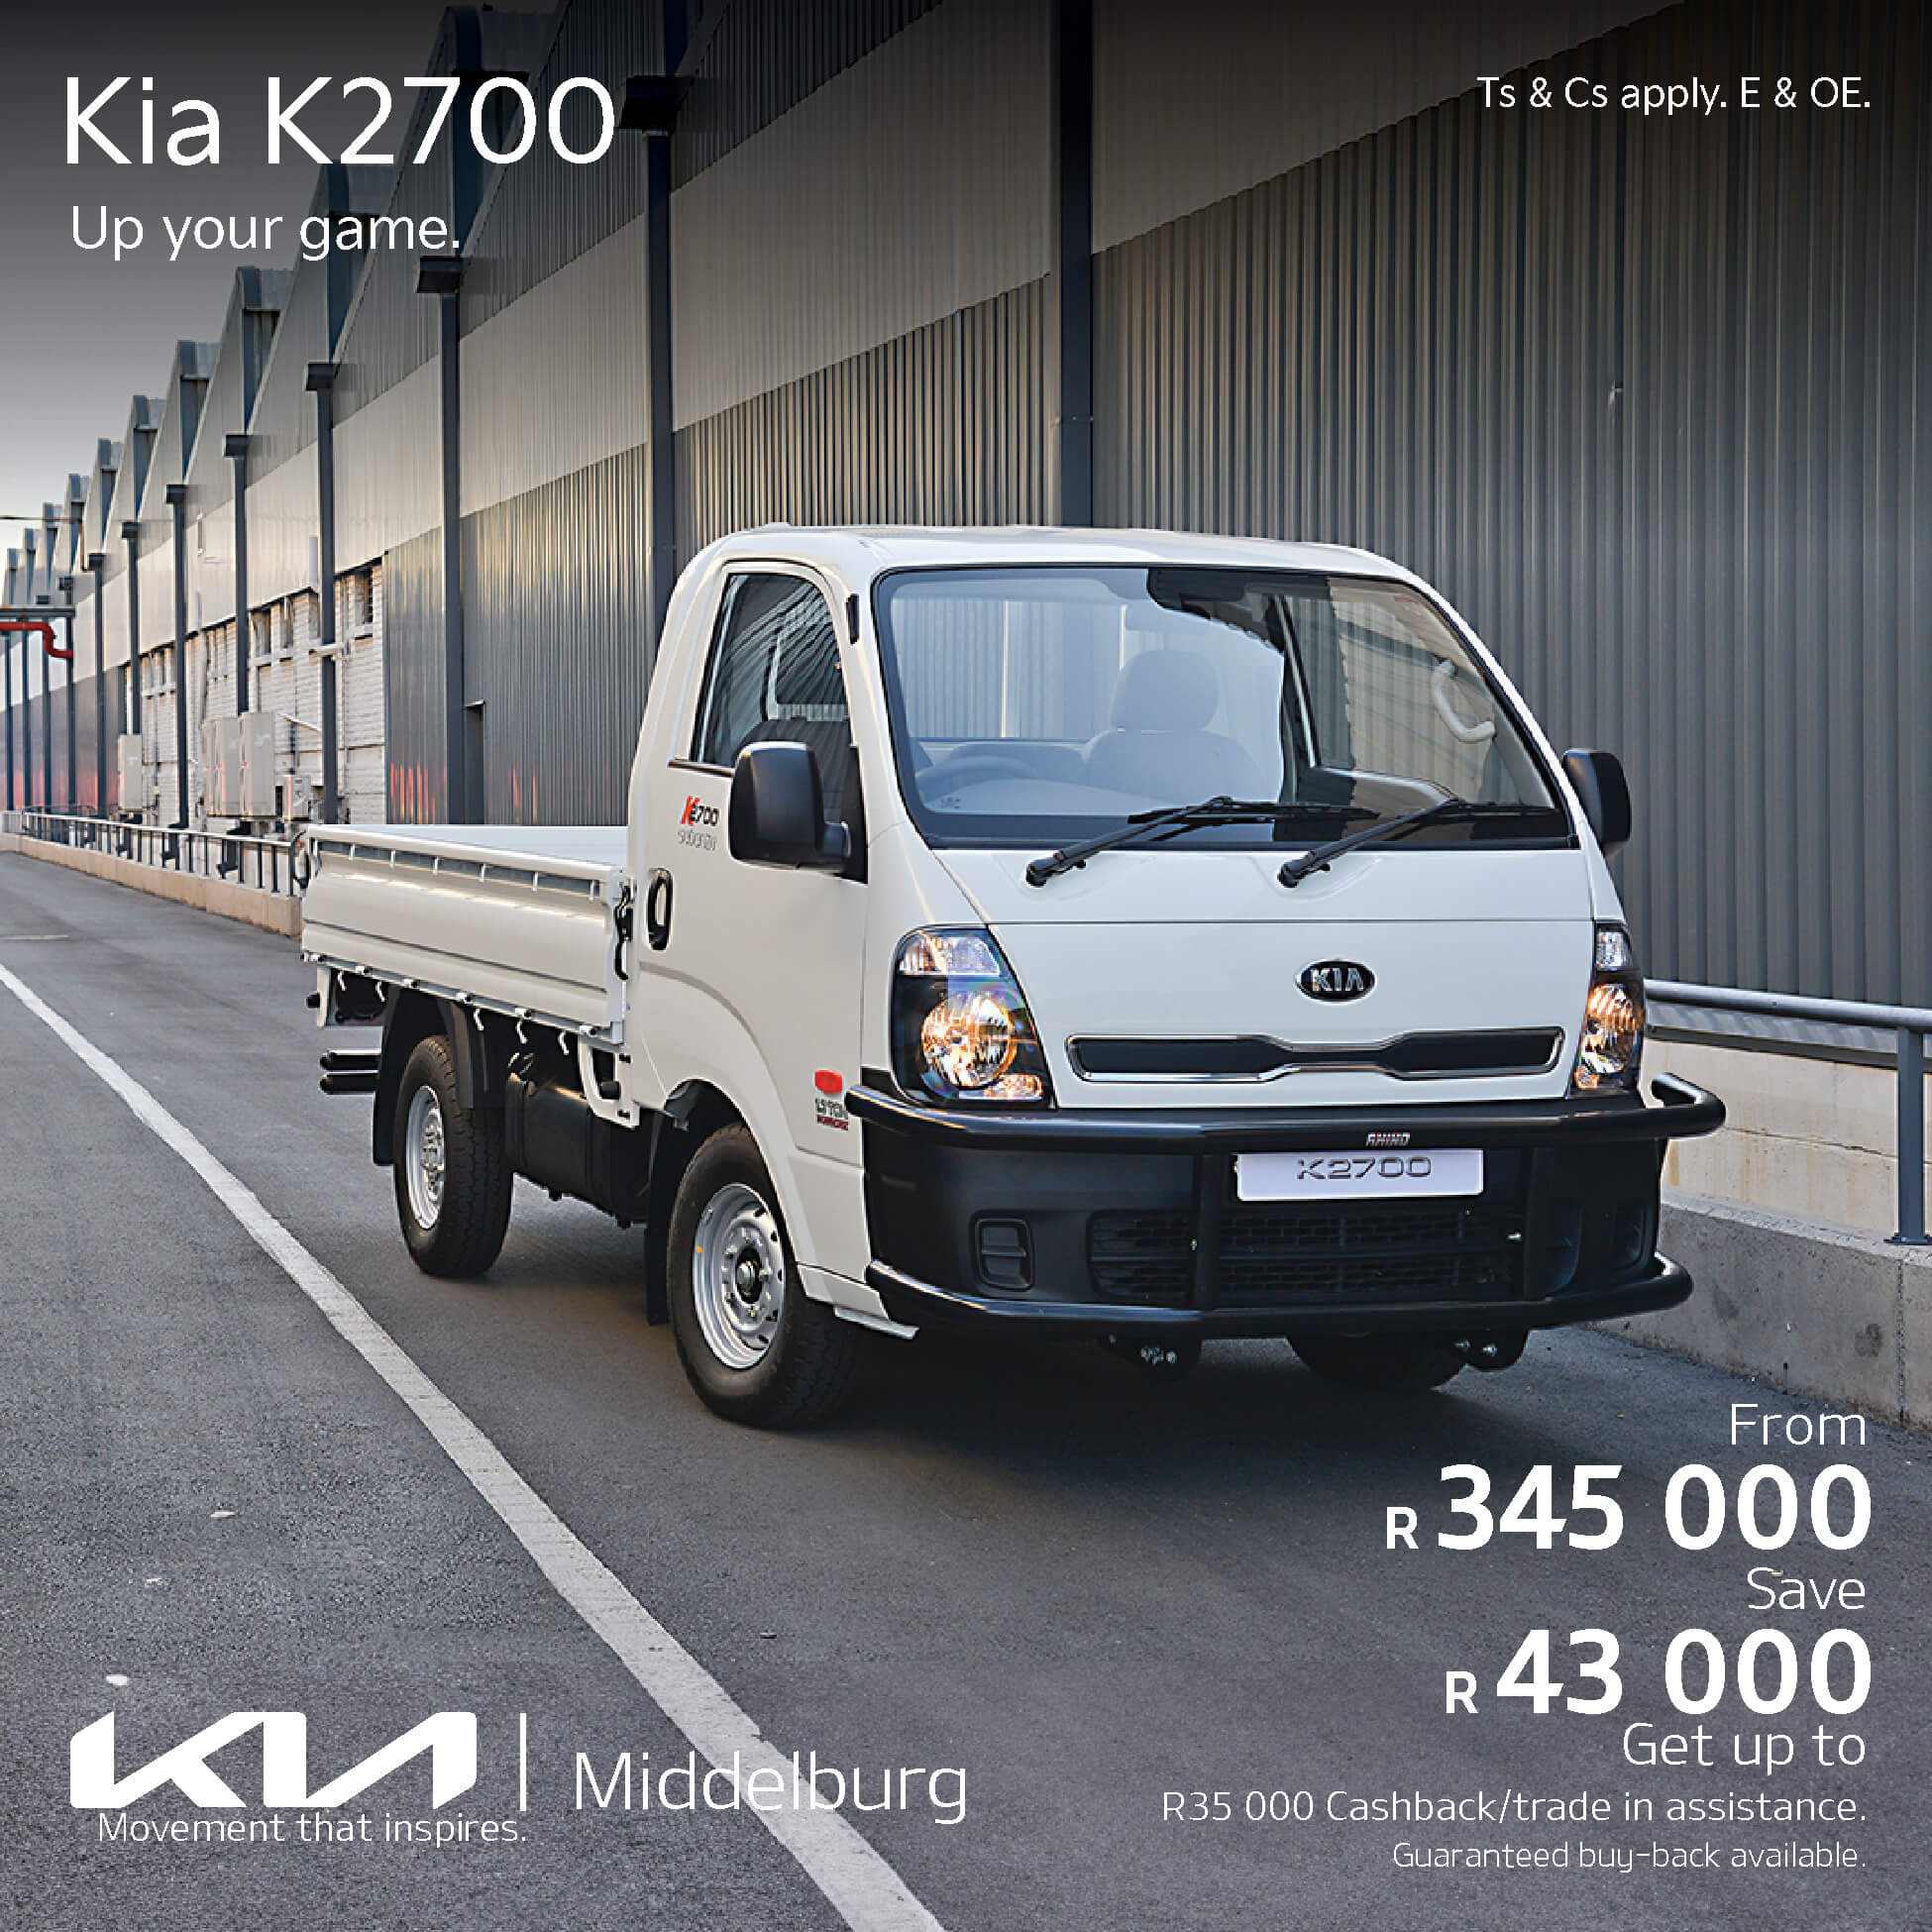 Kia K 2700 image from 